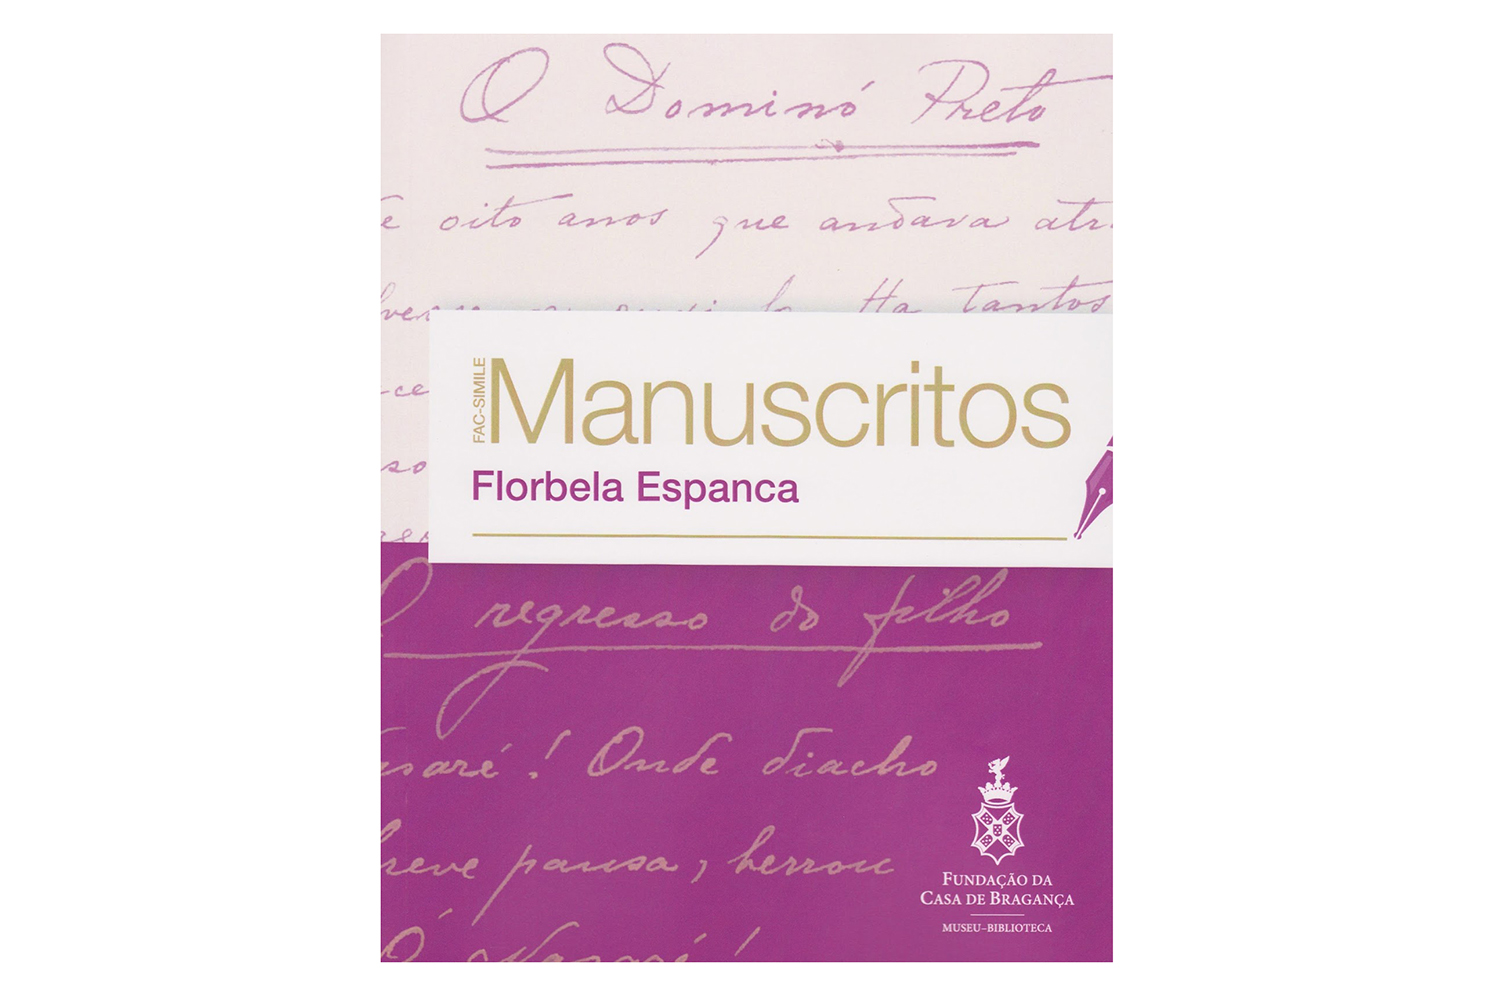 Autora de diversas obras sobre a poeta portuguesa Florbela Espanca, Dal Farra trabalhou no reconhecimento e legitimação de manuscritos da autora publicados em edição fac-similar pela Fundação Casa de Bragança, em Portugal